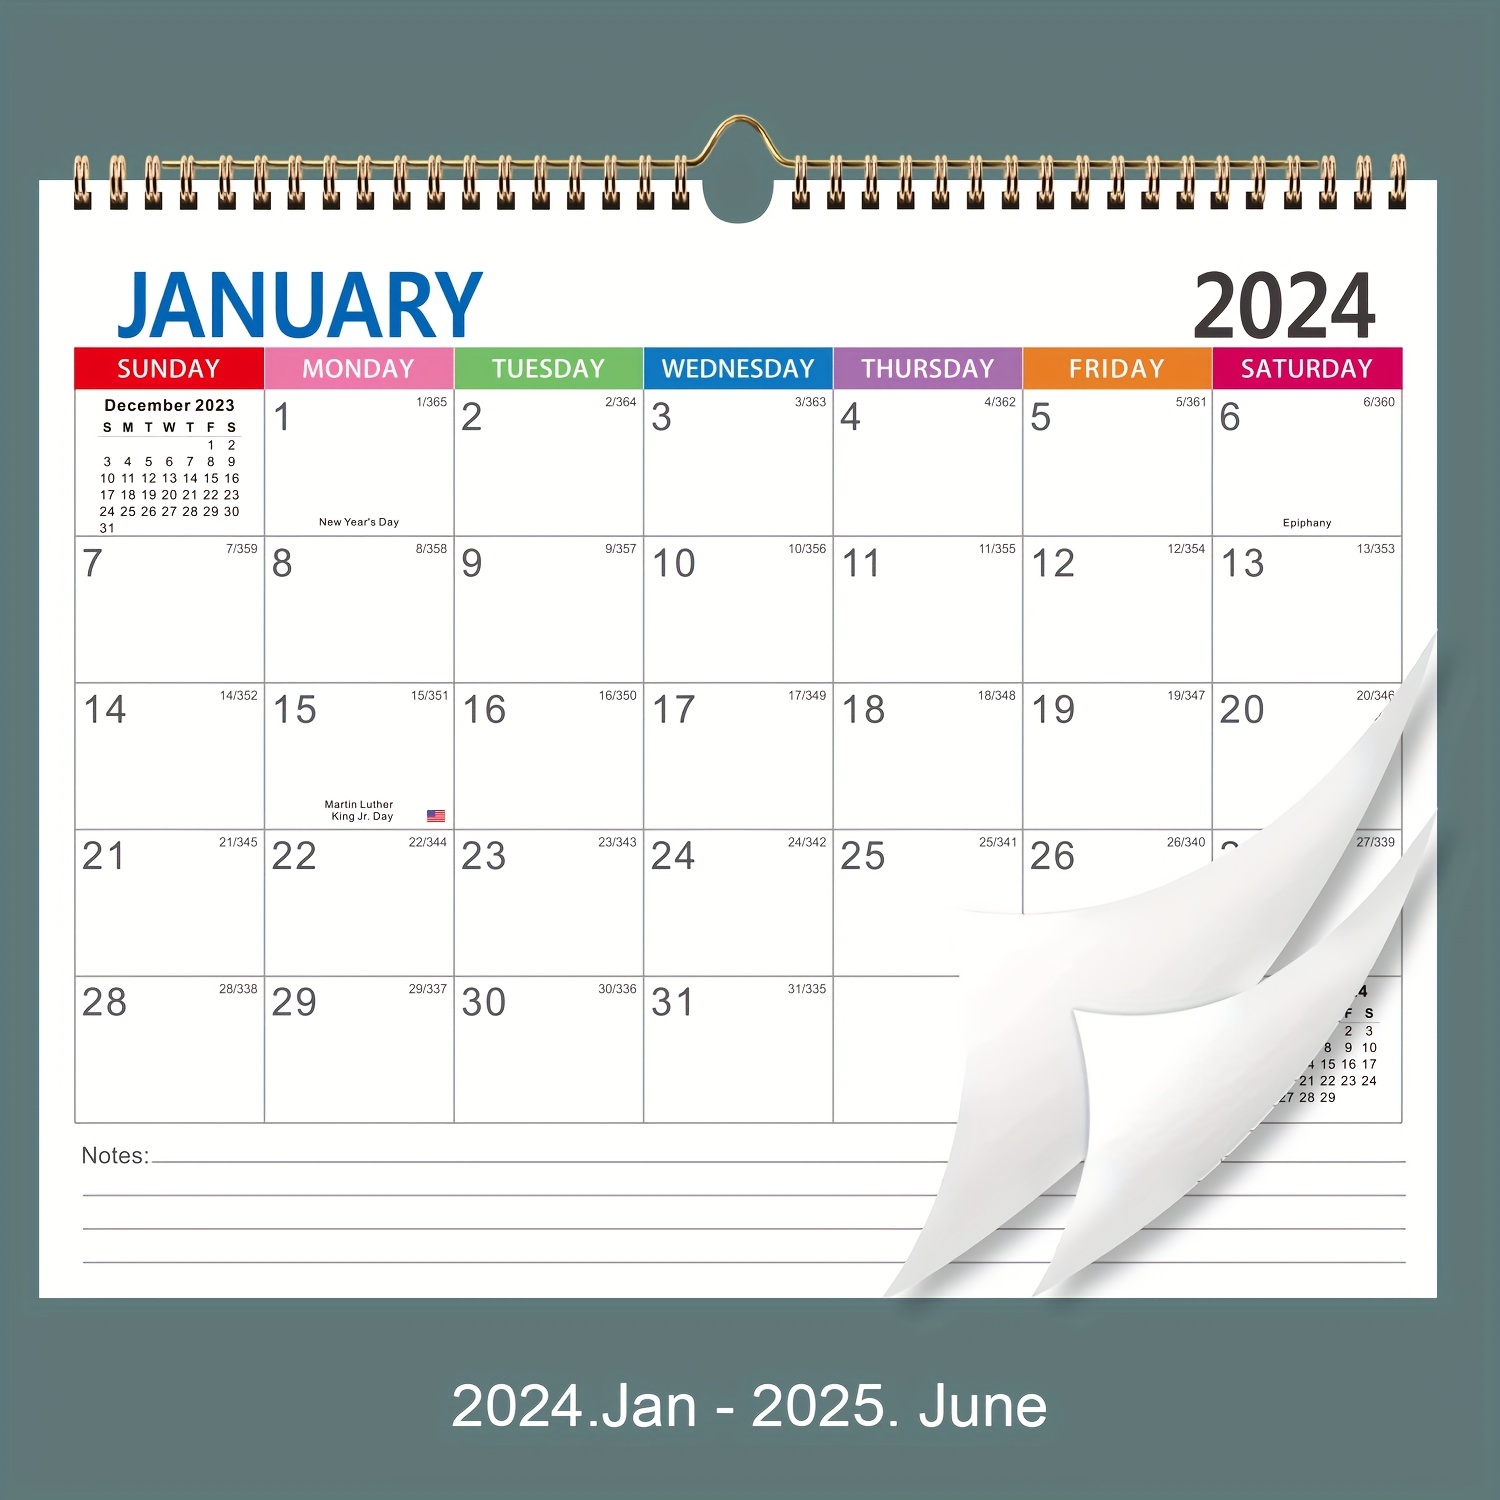 Q1 2024 Calendrier mural géant trimestriel janvier mars 2024 Planificateur  de 90 jours Planificateur annuel de 12 semaines Agenda trimestriel  minimaliste vert -  France